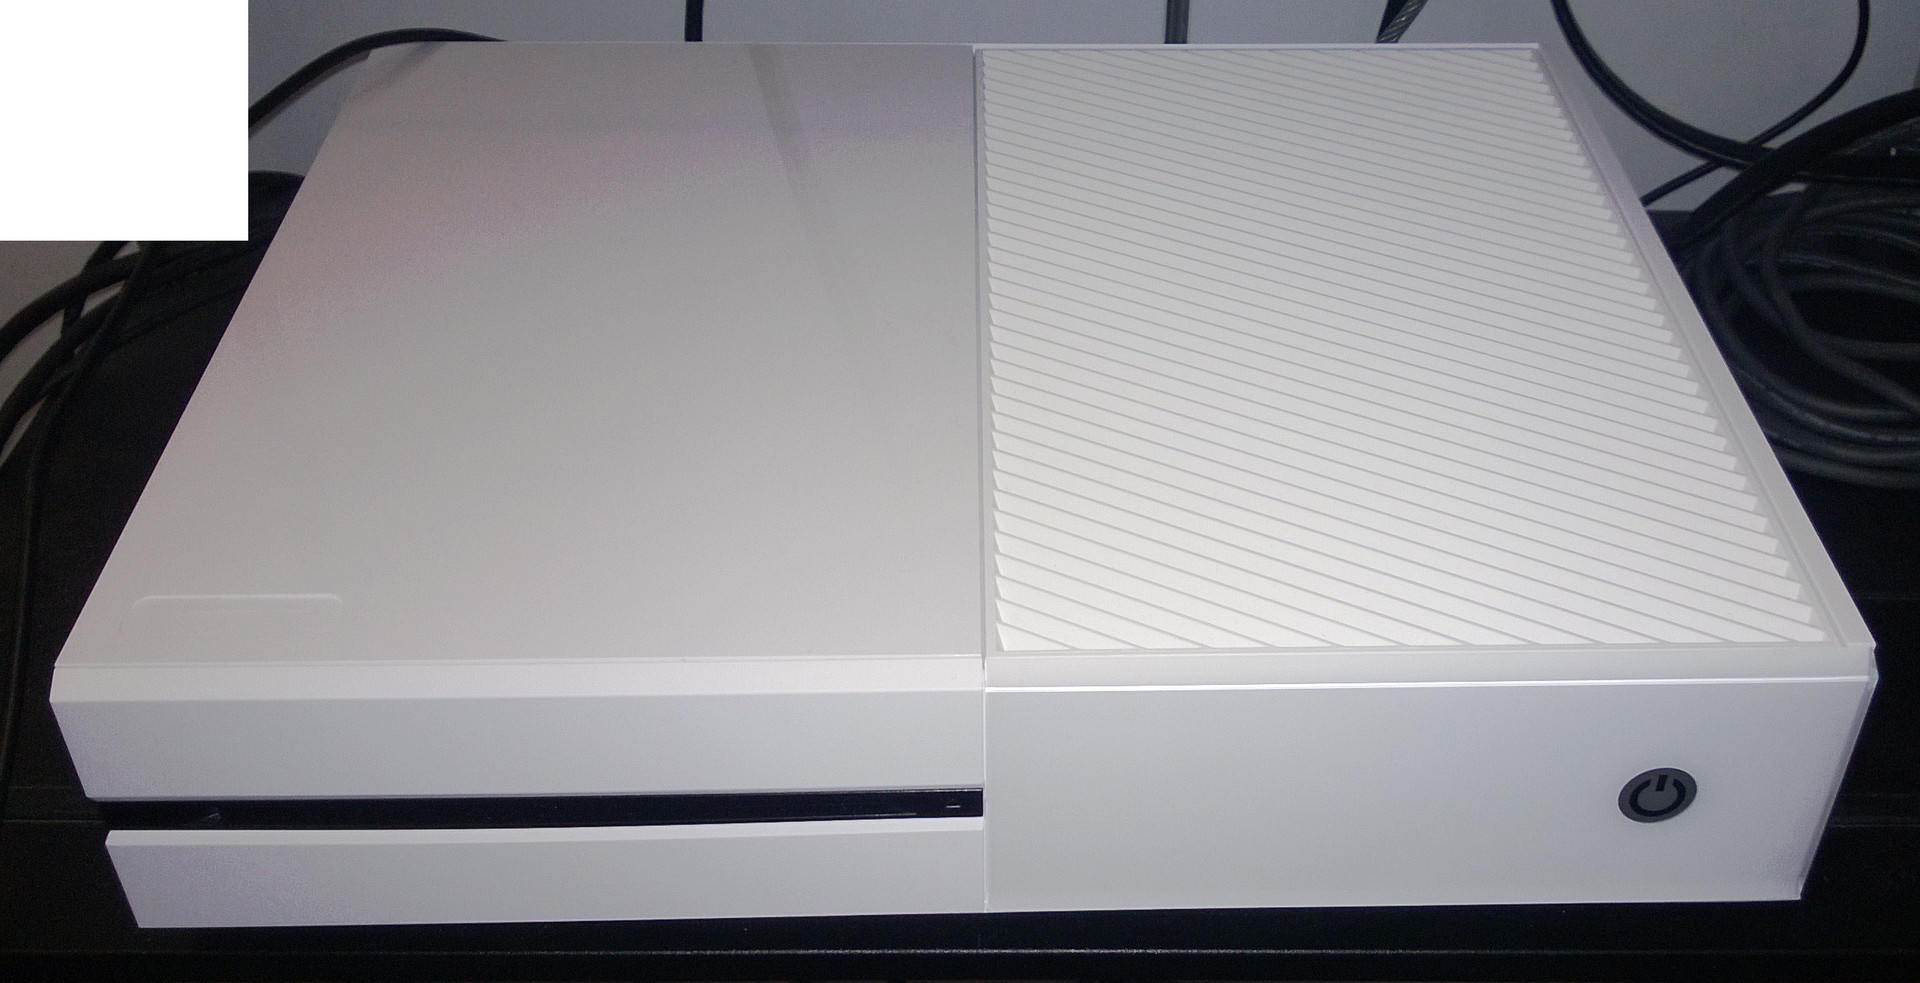 Na fotce zachycen Xbox One v bílém provedení 85113